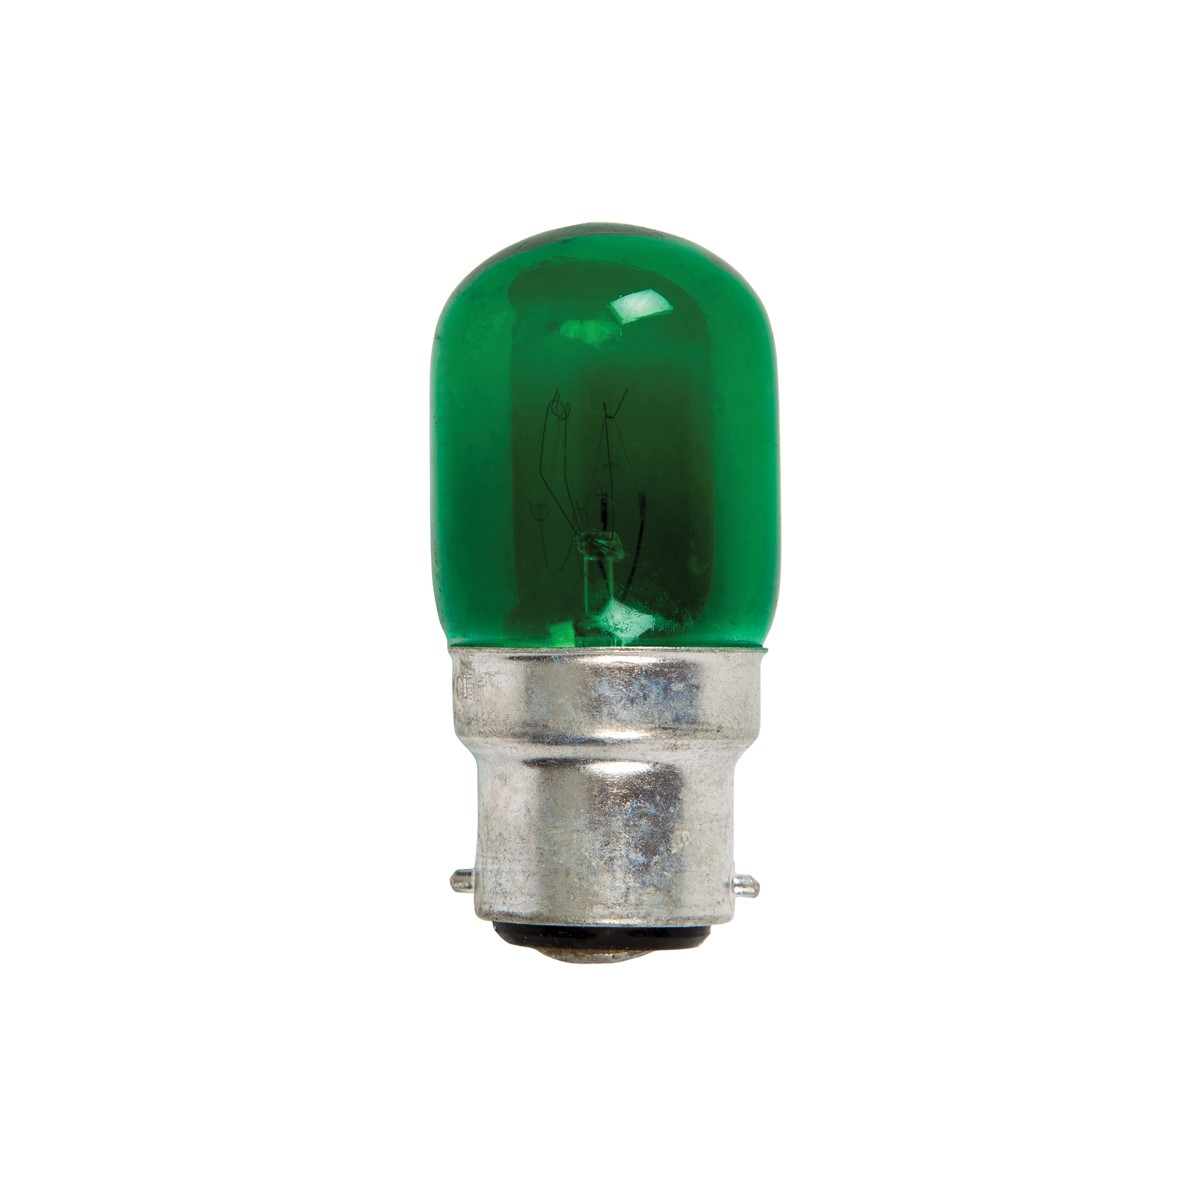 Λάμπακι νυκτός B22 3W 220V πράσινο VK/505/B22/GR